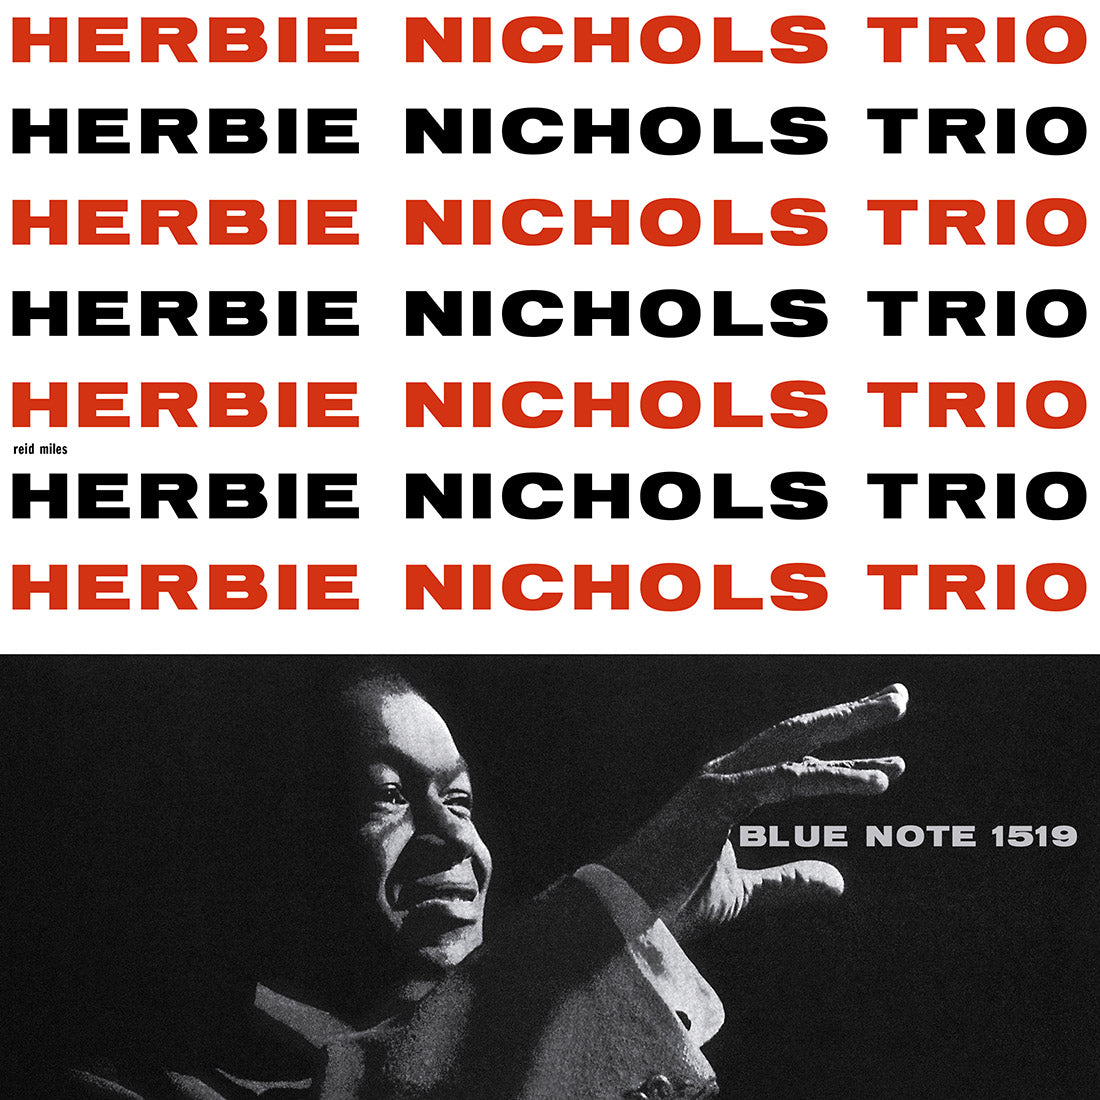 Herbie Nichols Trio - Herbie Nichols Trio (Tone Poet series): Vinyl LP